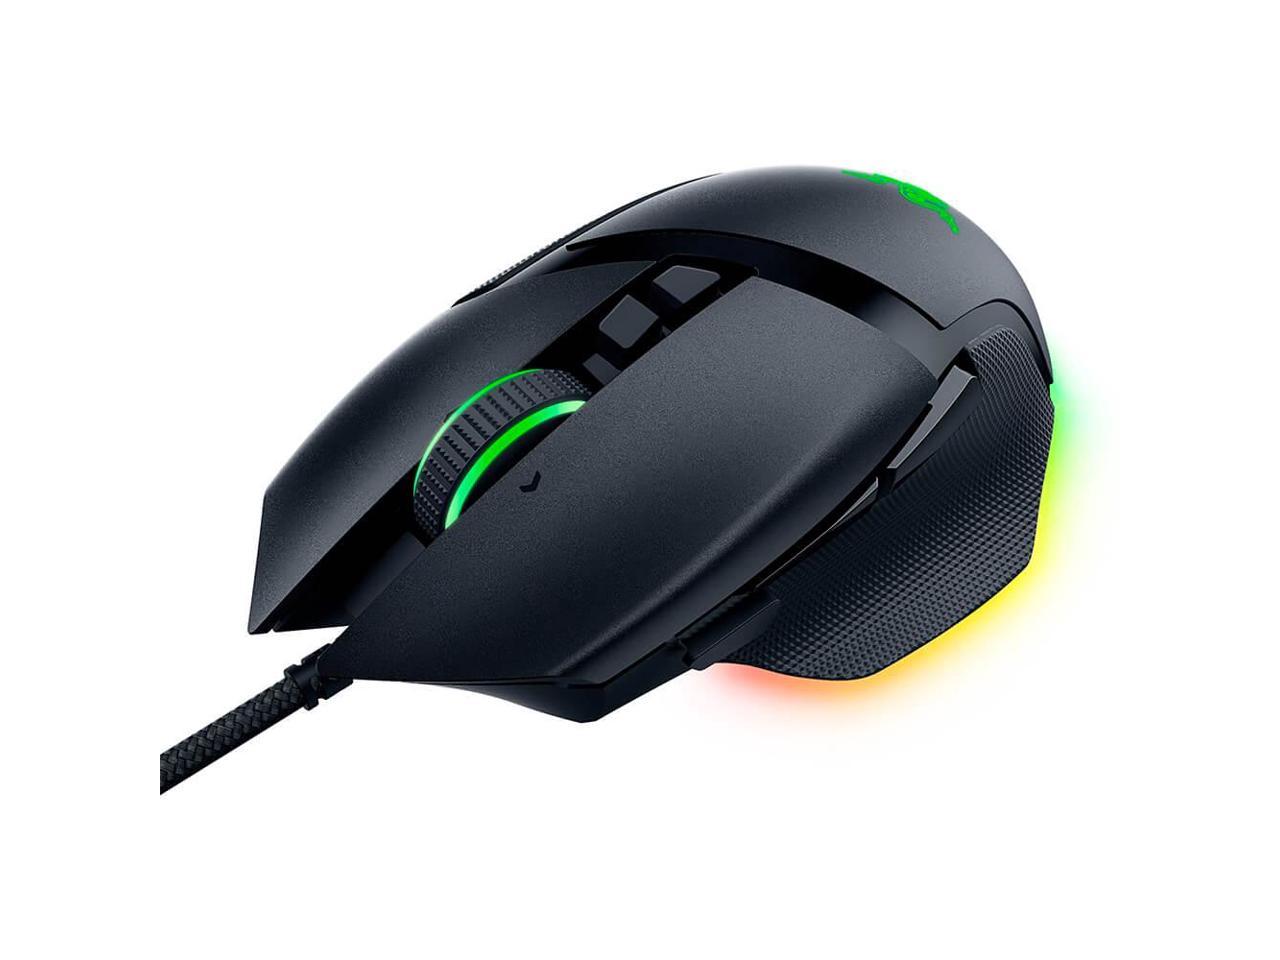 Razer Basilisk V3 Customizable Ergonomic Gaming Mouse: Fastest Gaming Mouse Switch - Chroma RGB Lighting - 26K DPI Optical Senso